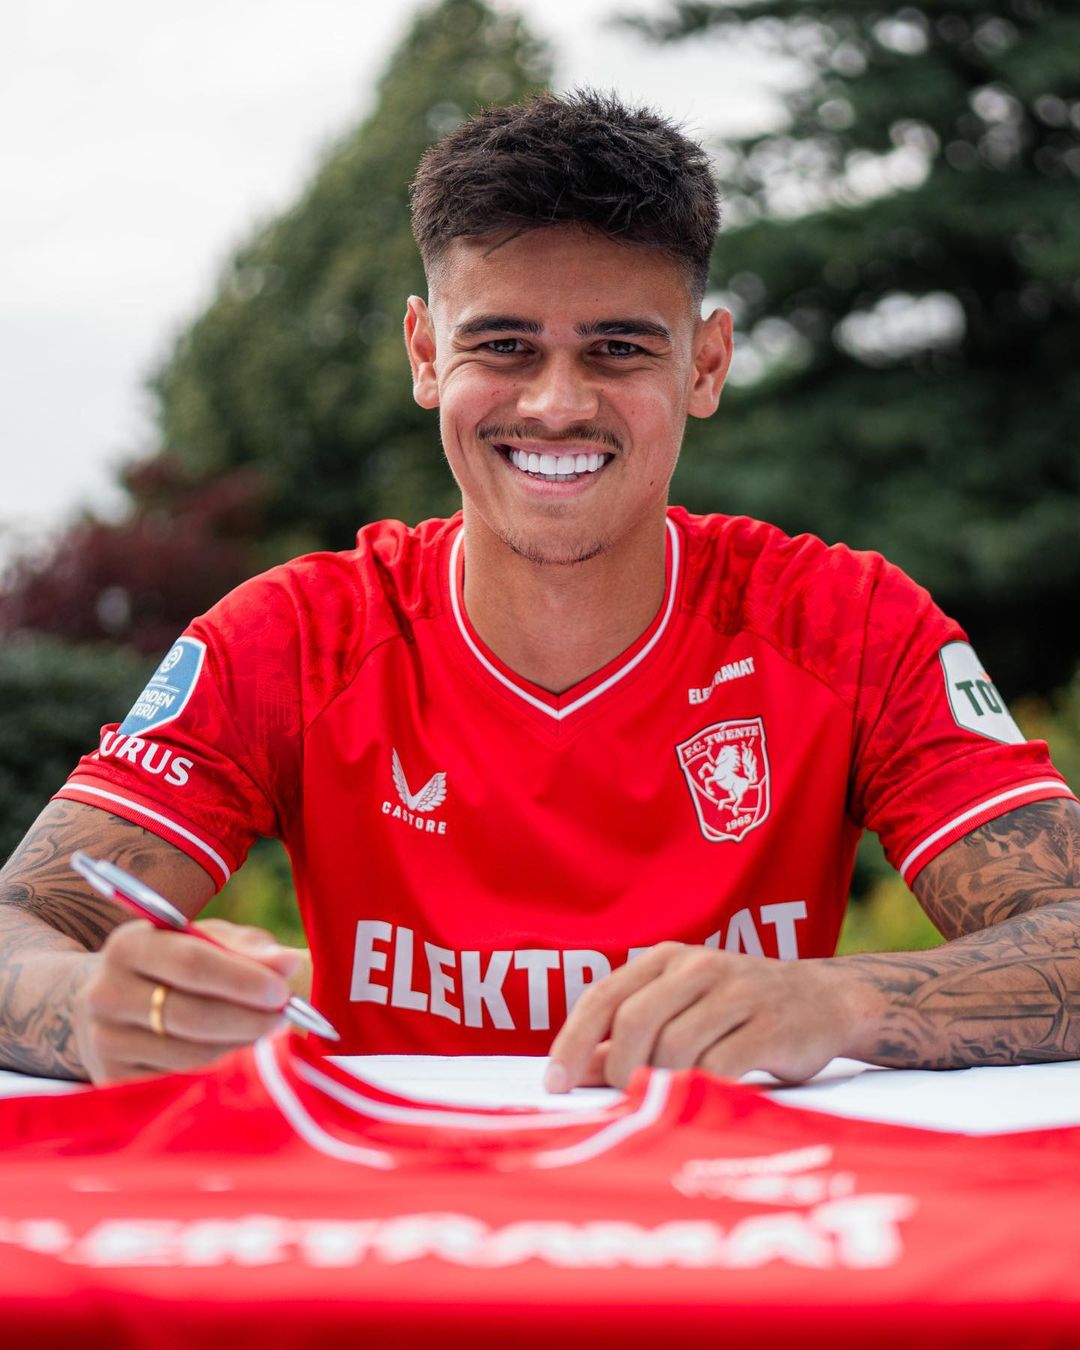 Mees Hilgers perpanjang kontrak dengan Twente FC hingga 2026